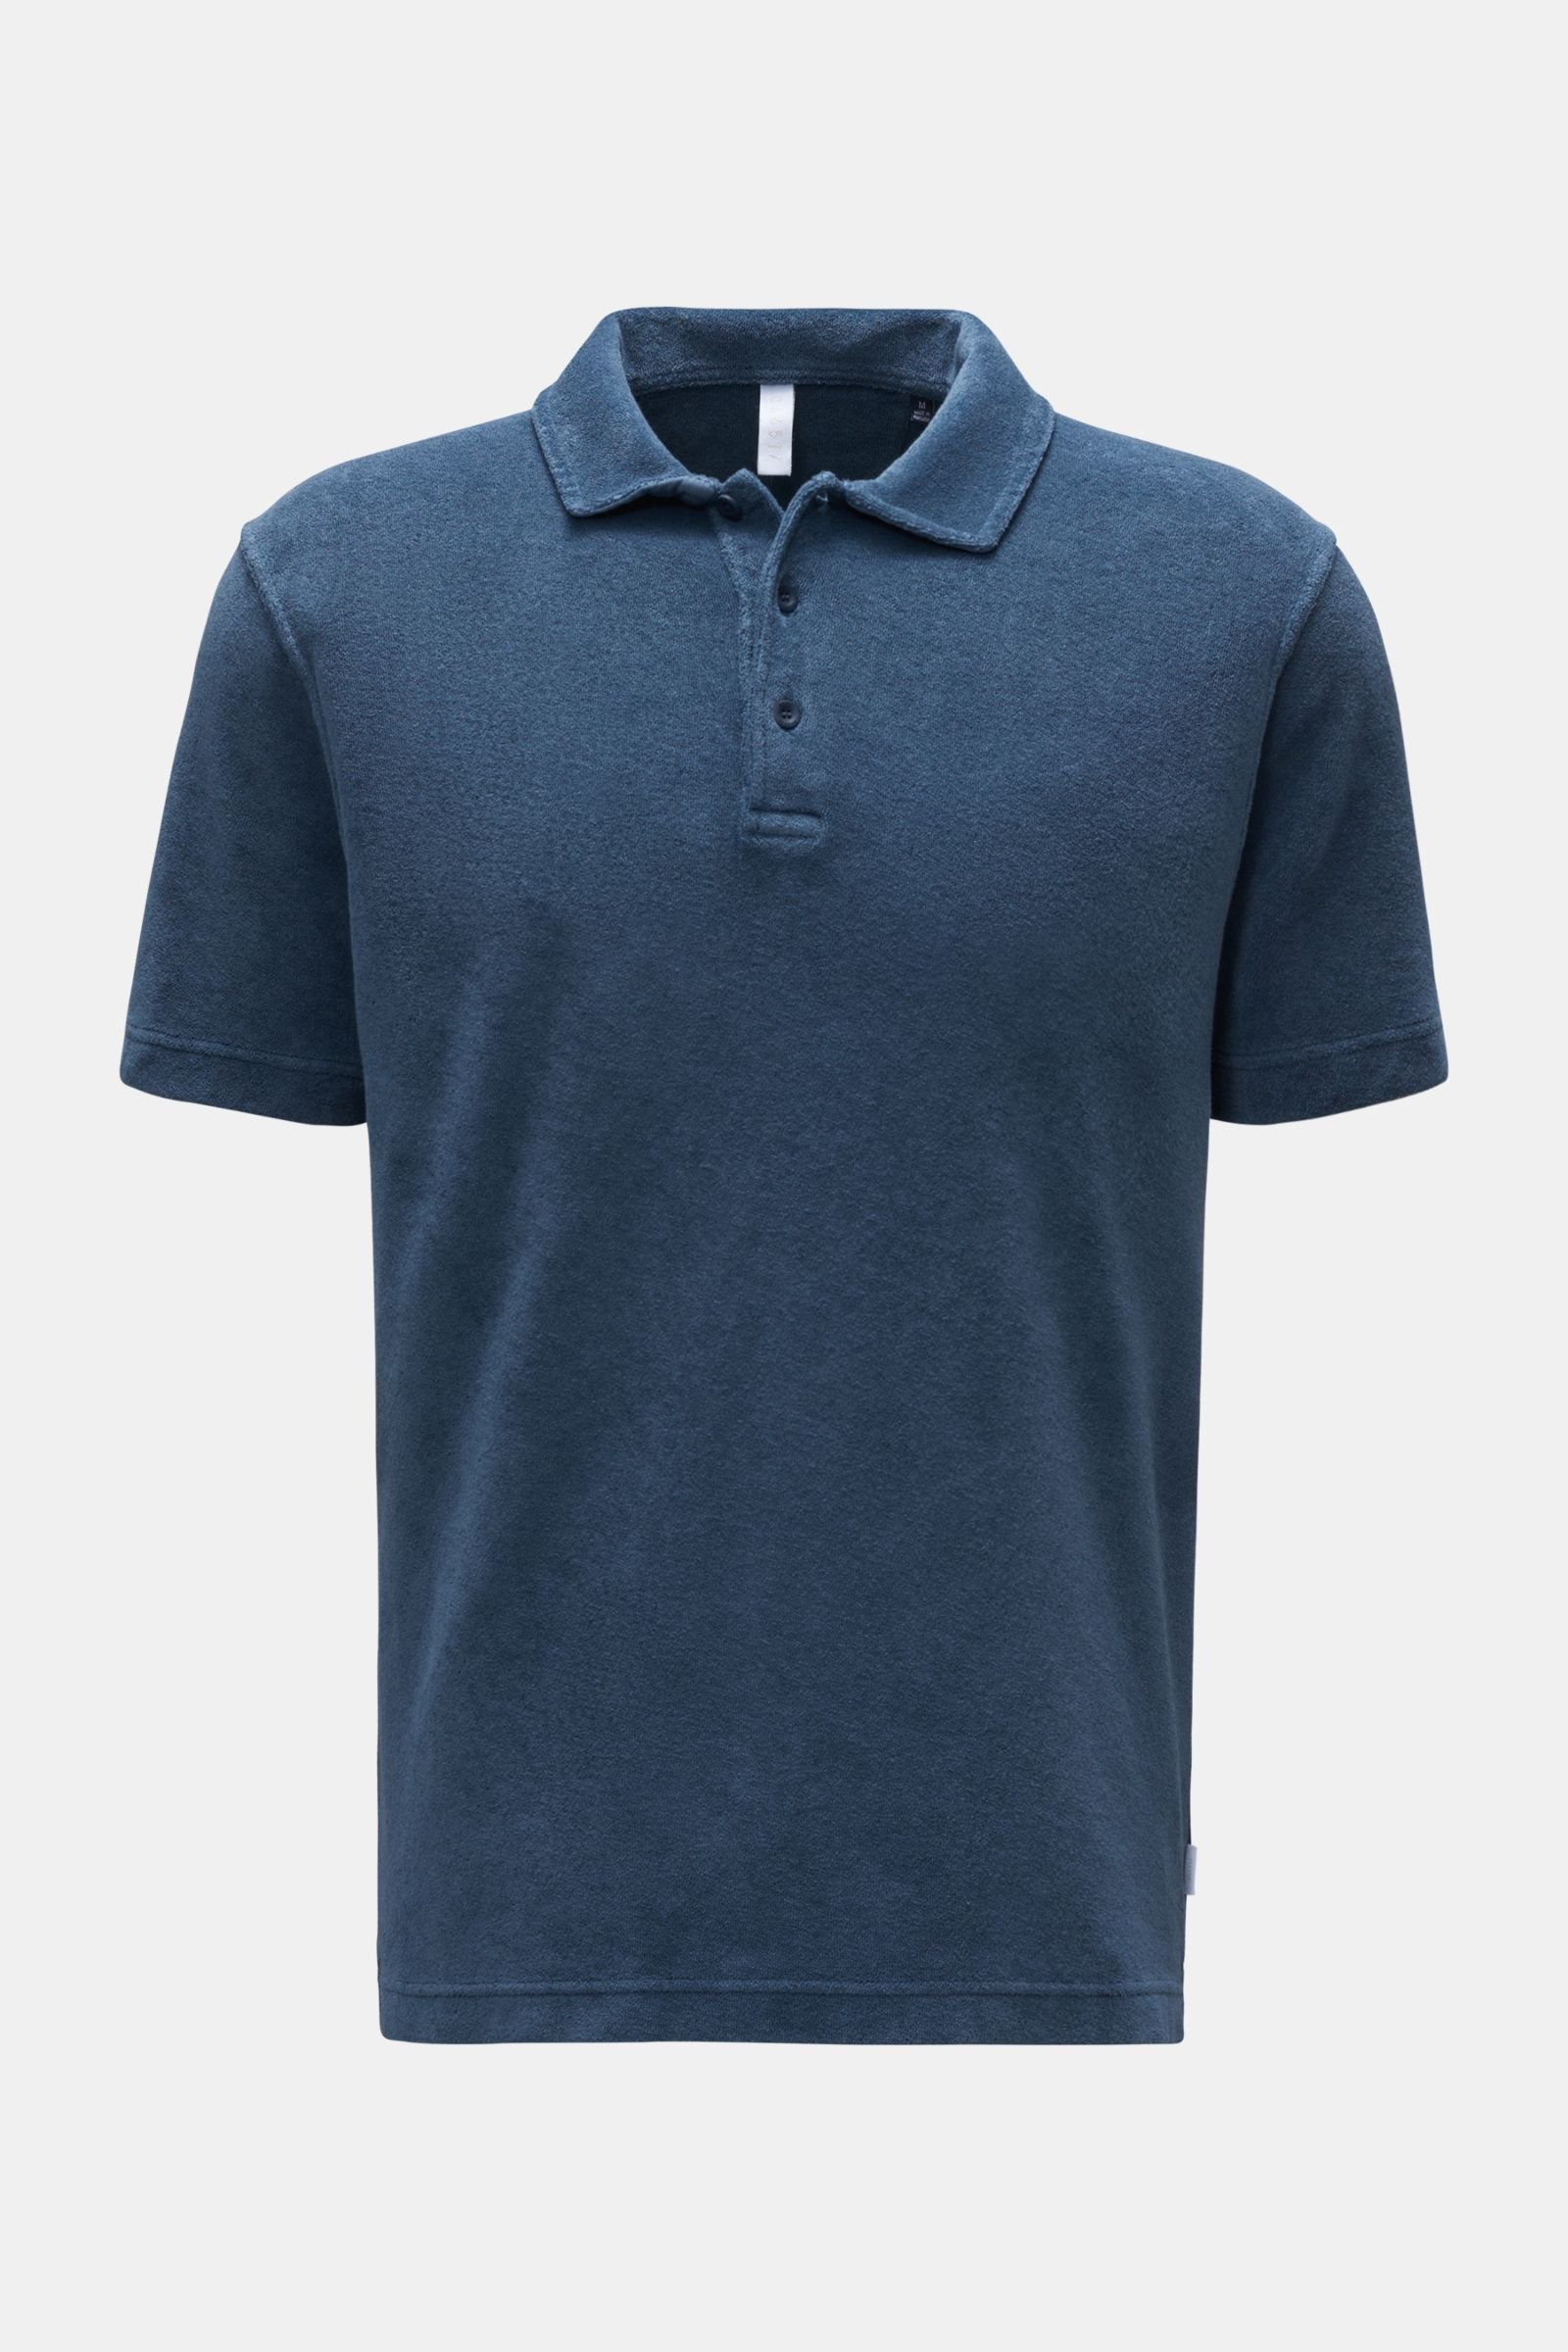 Terry polo shirt 'Terry Polo' grey-blue